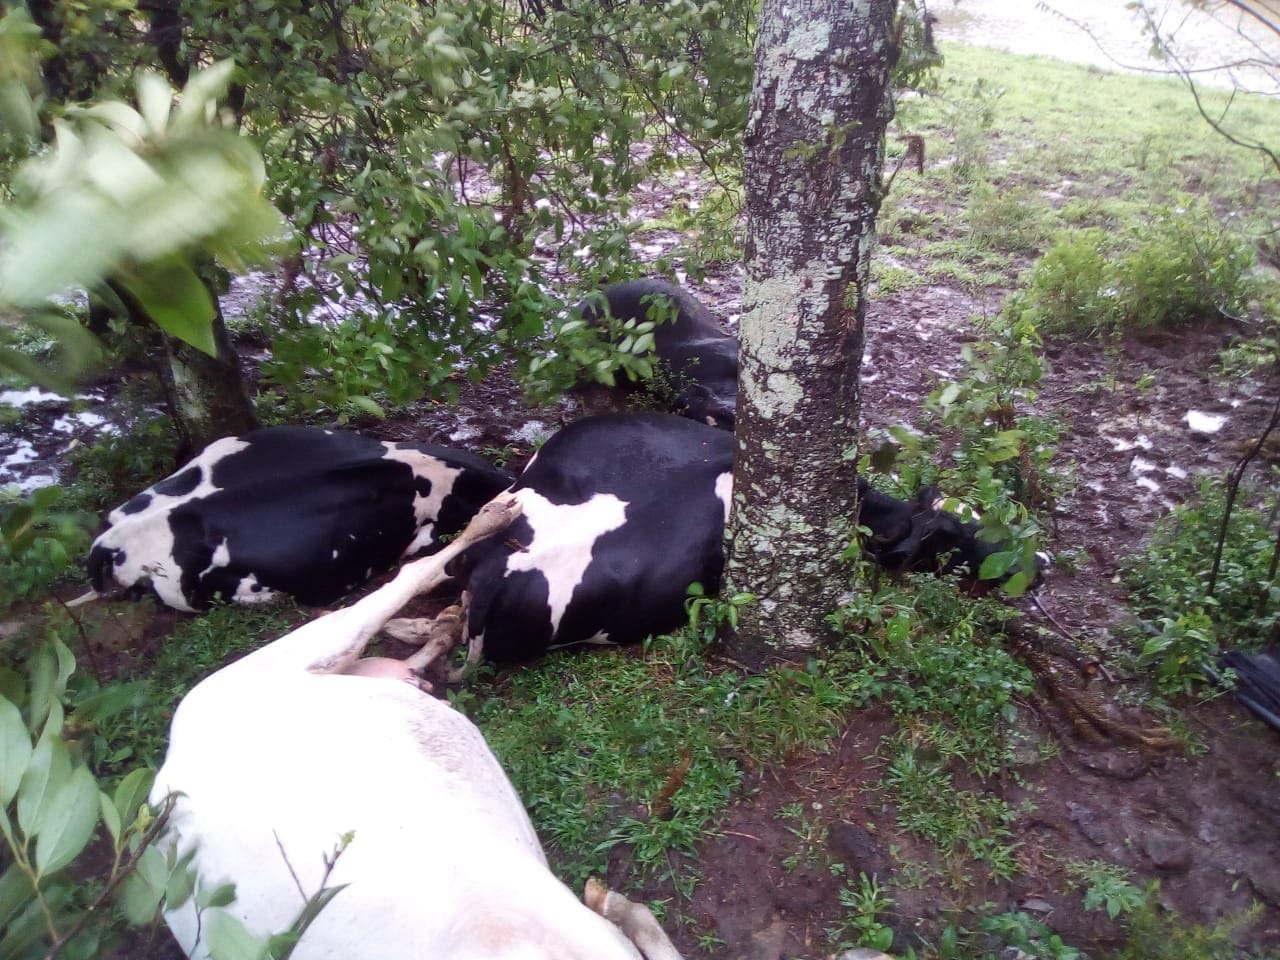 WhatsApp Image 2018 10 31 at 12.00.46 - Raio mata cinco vacas em sítio no interior do Rio Grande do Norte